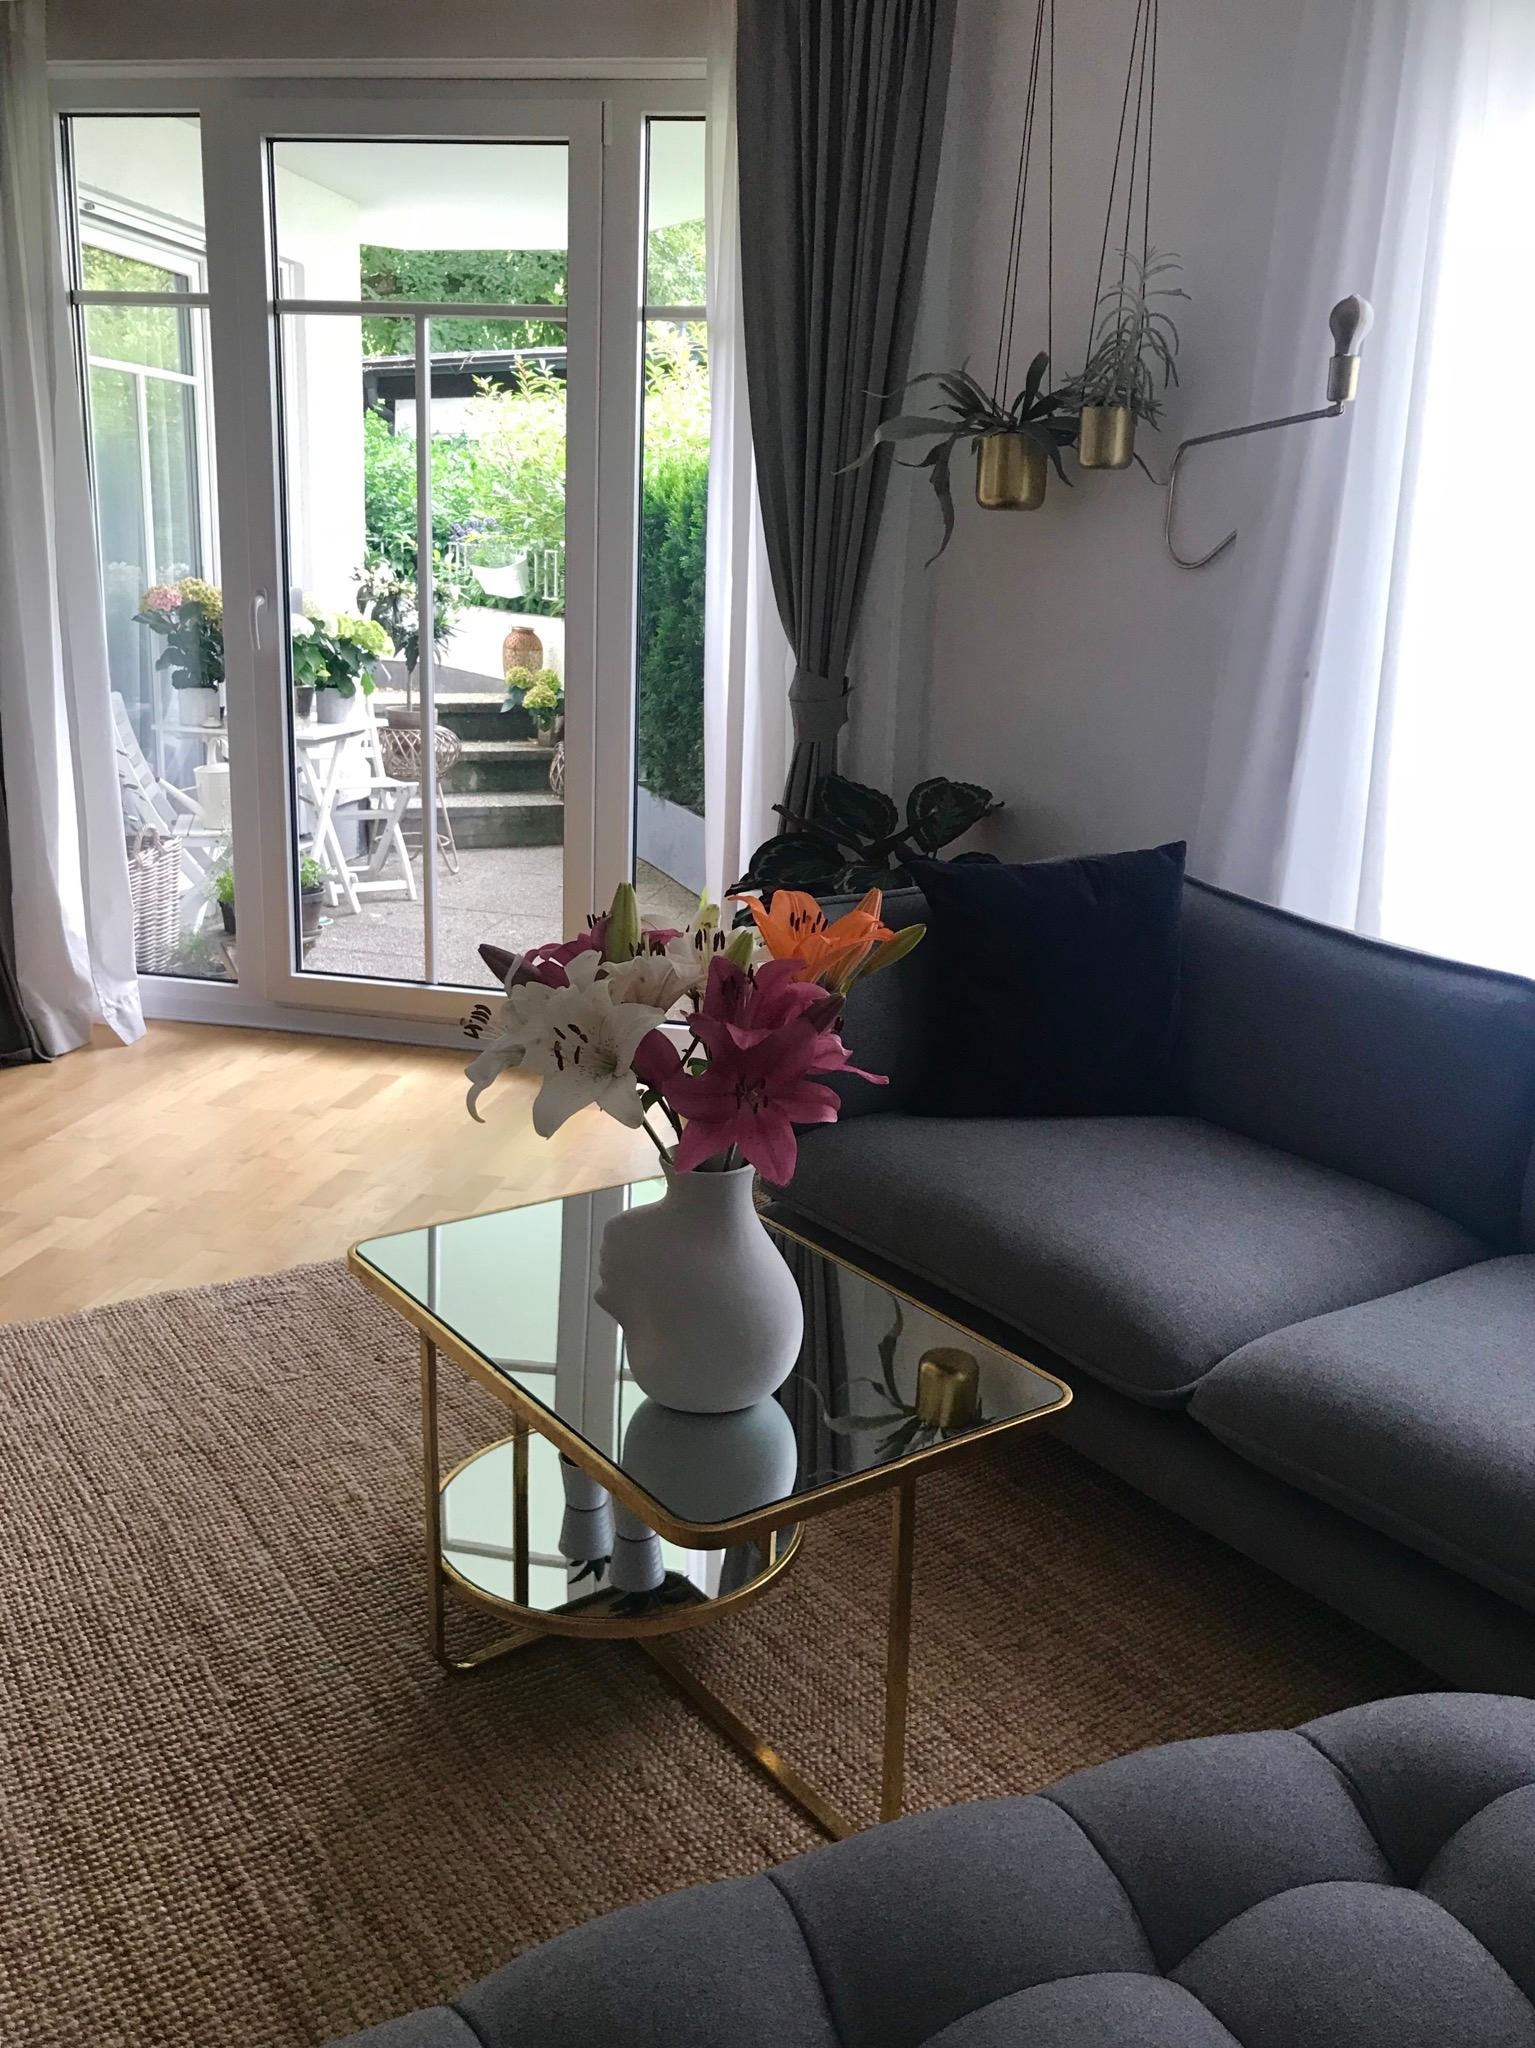 LIVINGROOMVIEW 
•
•
#nawyshome #livingroom #lilien #blickinsgrüne #happywednesday